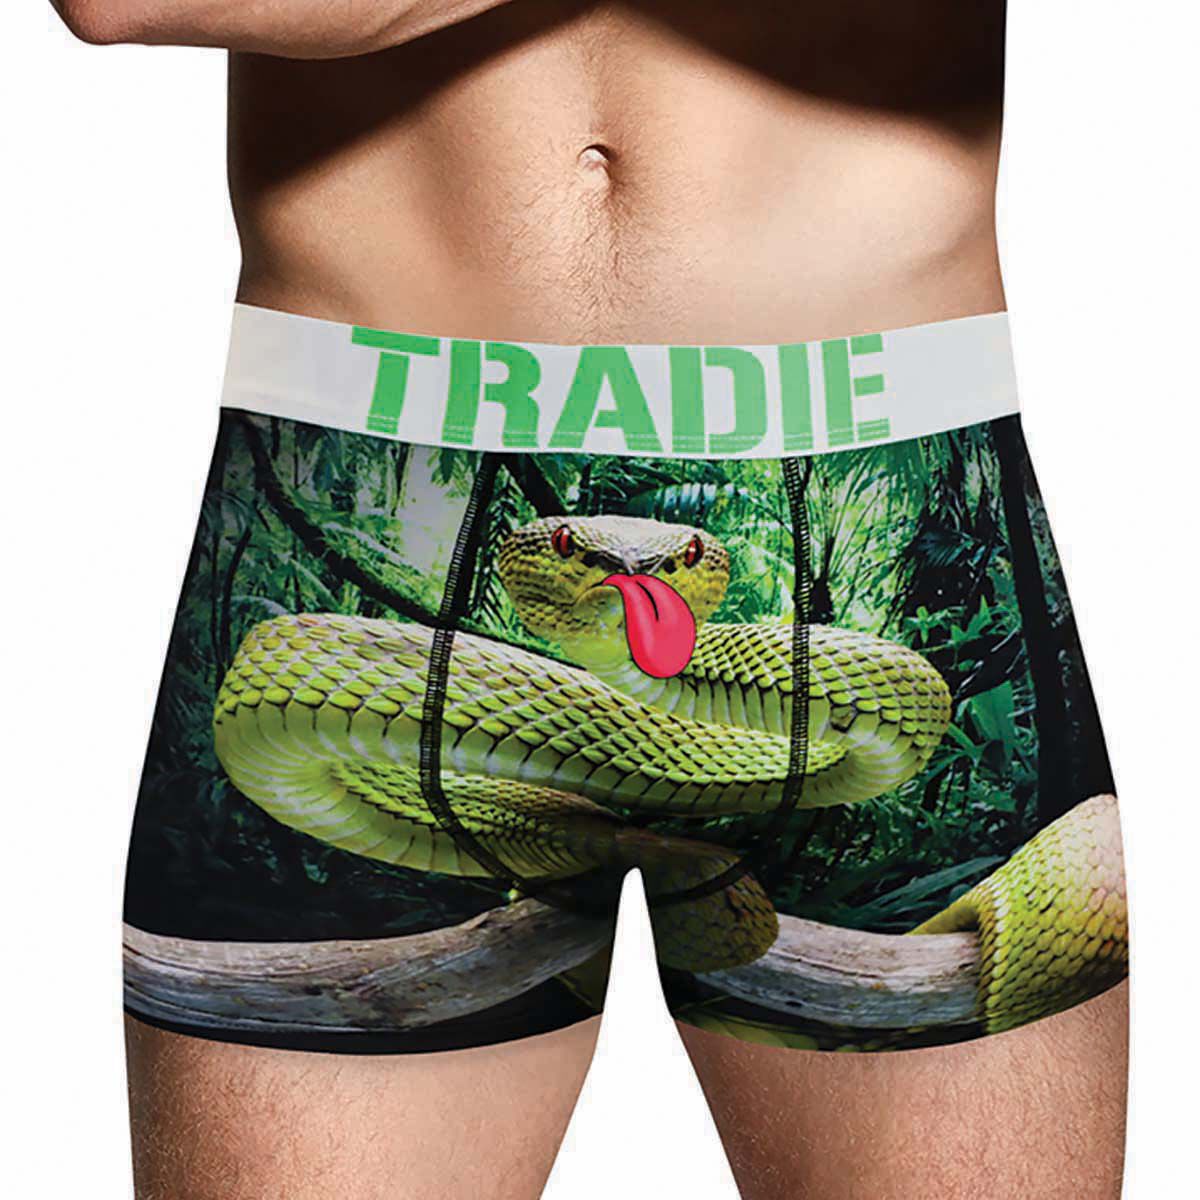 Tradie Underwear Mens Splat Glitch Printed Man Front Trunk Brief Size S New